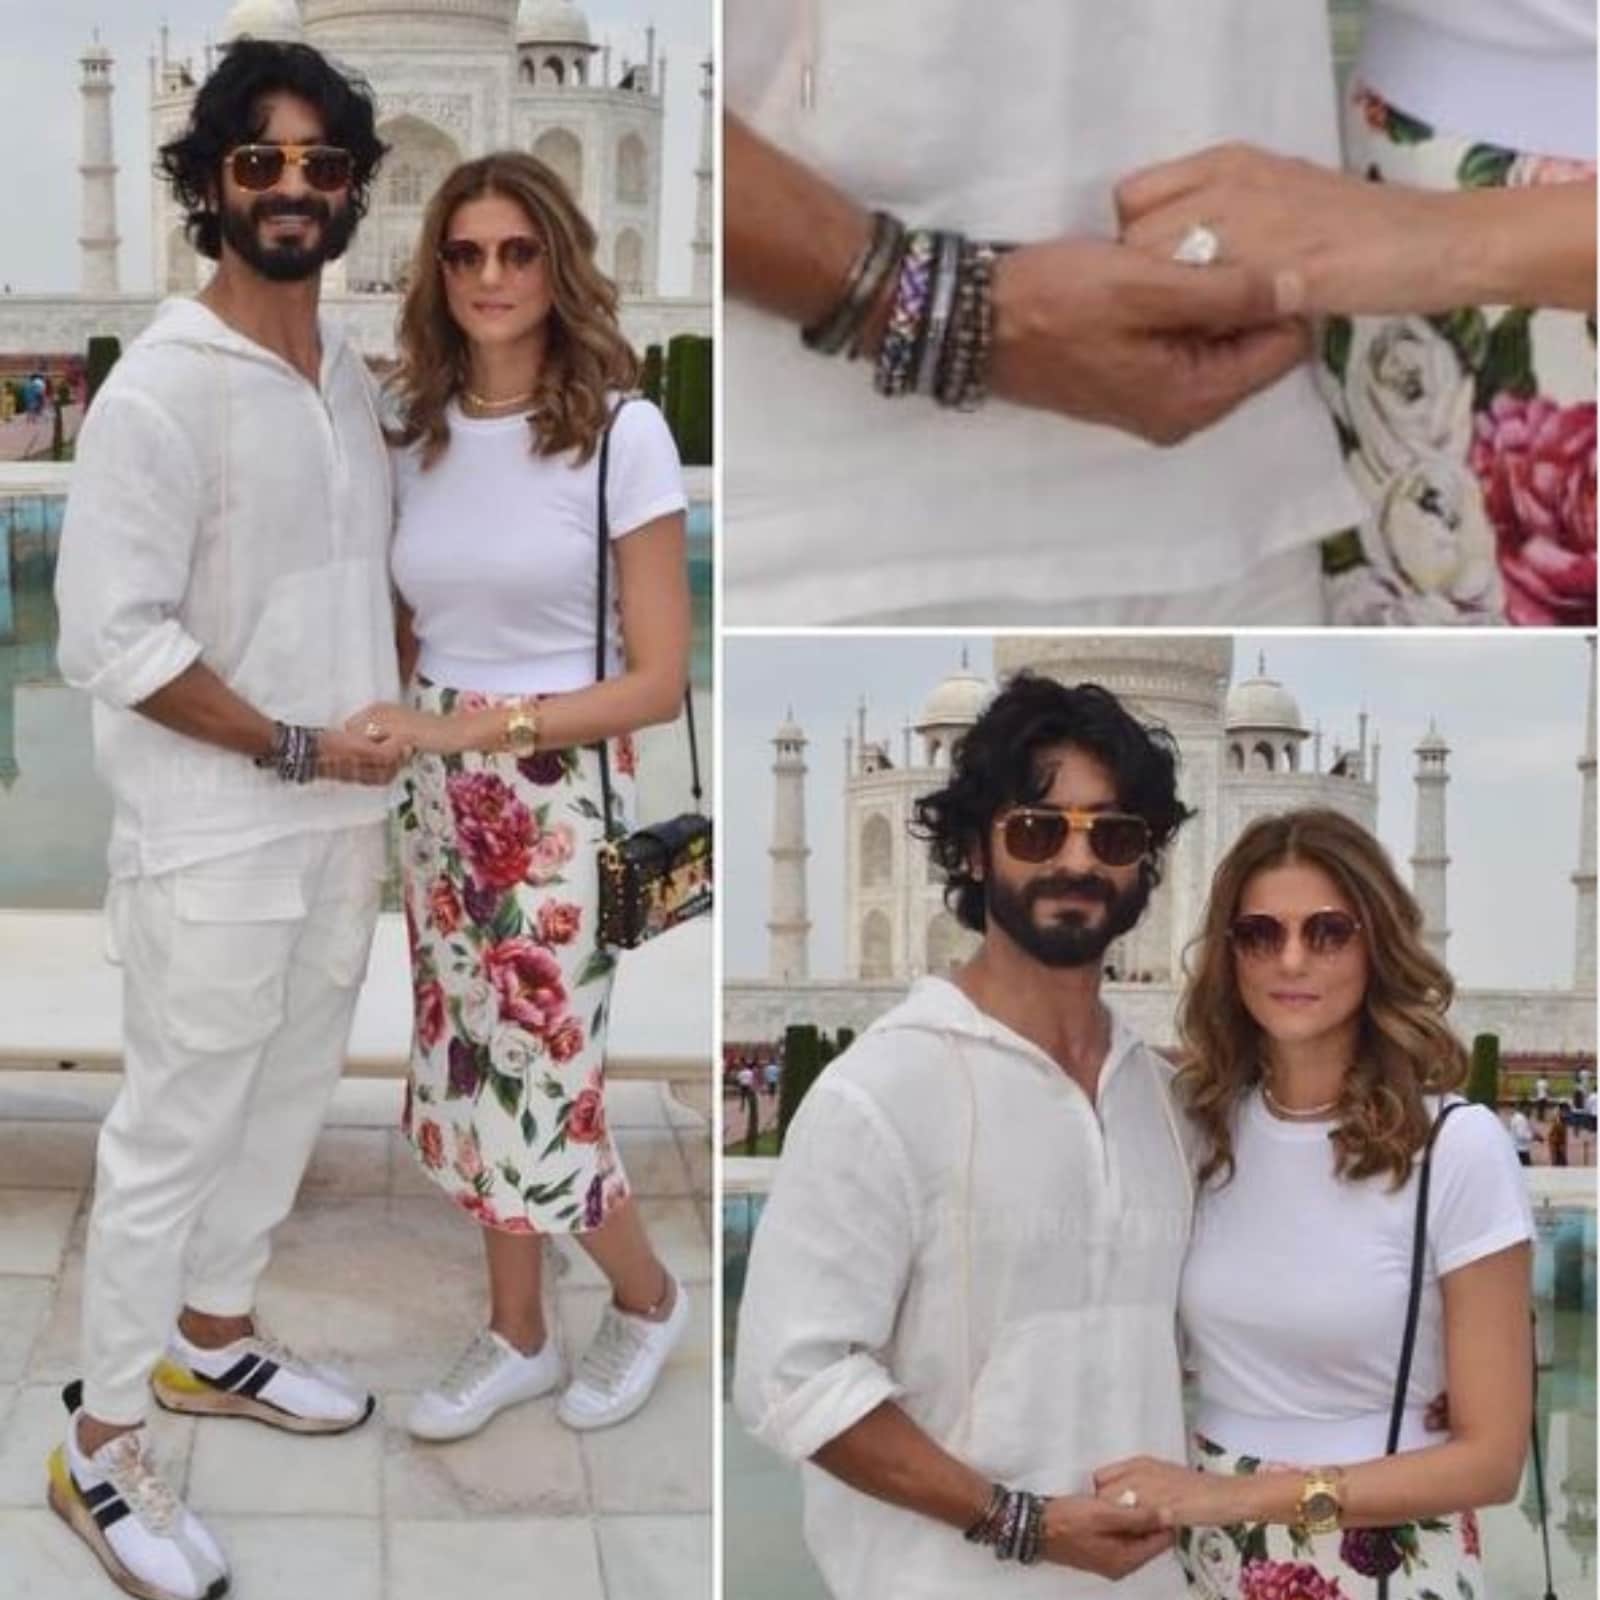 Vidyut Jammwal and Nandita Mahtani Are Engaged? Their Photos From Taj Mahal Go Viral